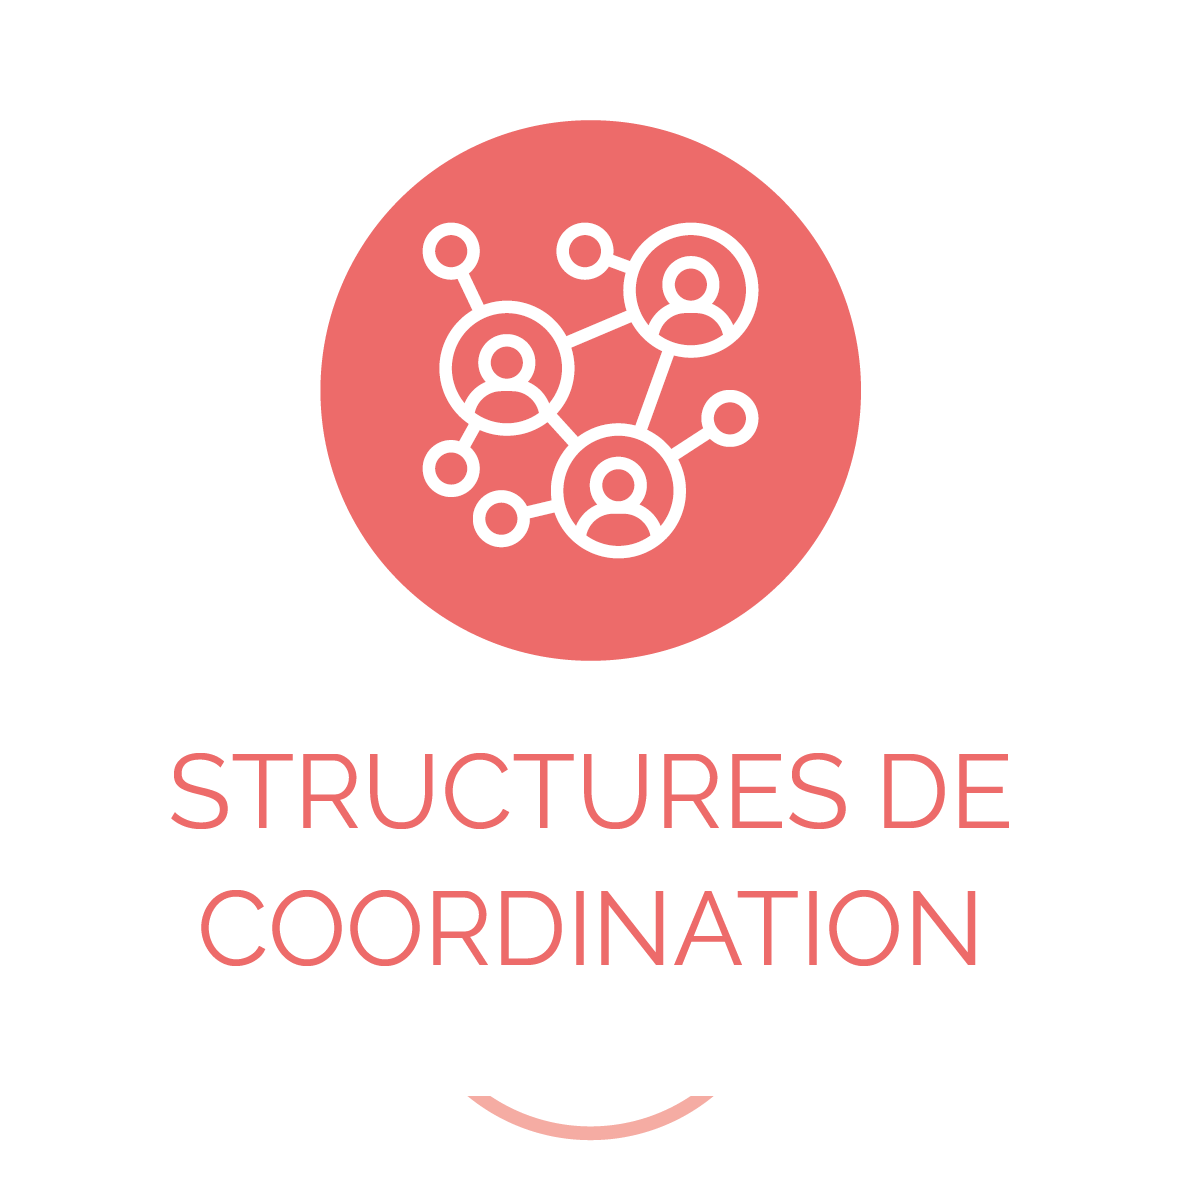 https://daps-85.fr/wp-content/uploads/2021/01/Structures-de-coordination-corail.png